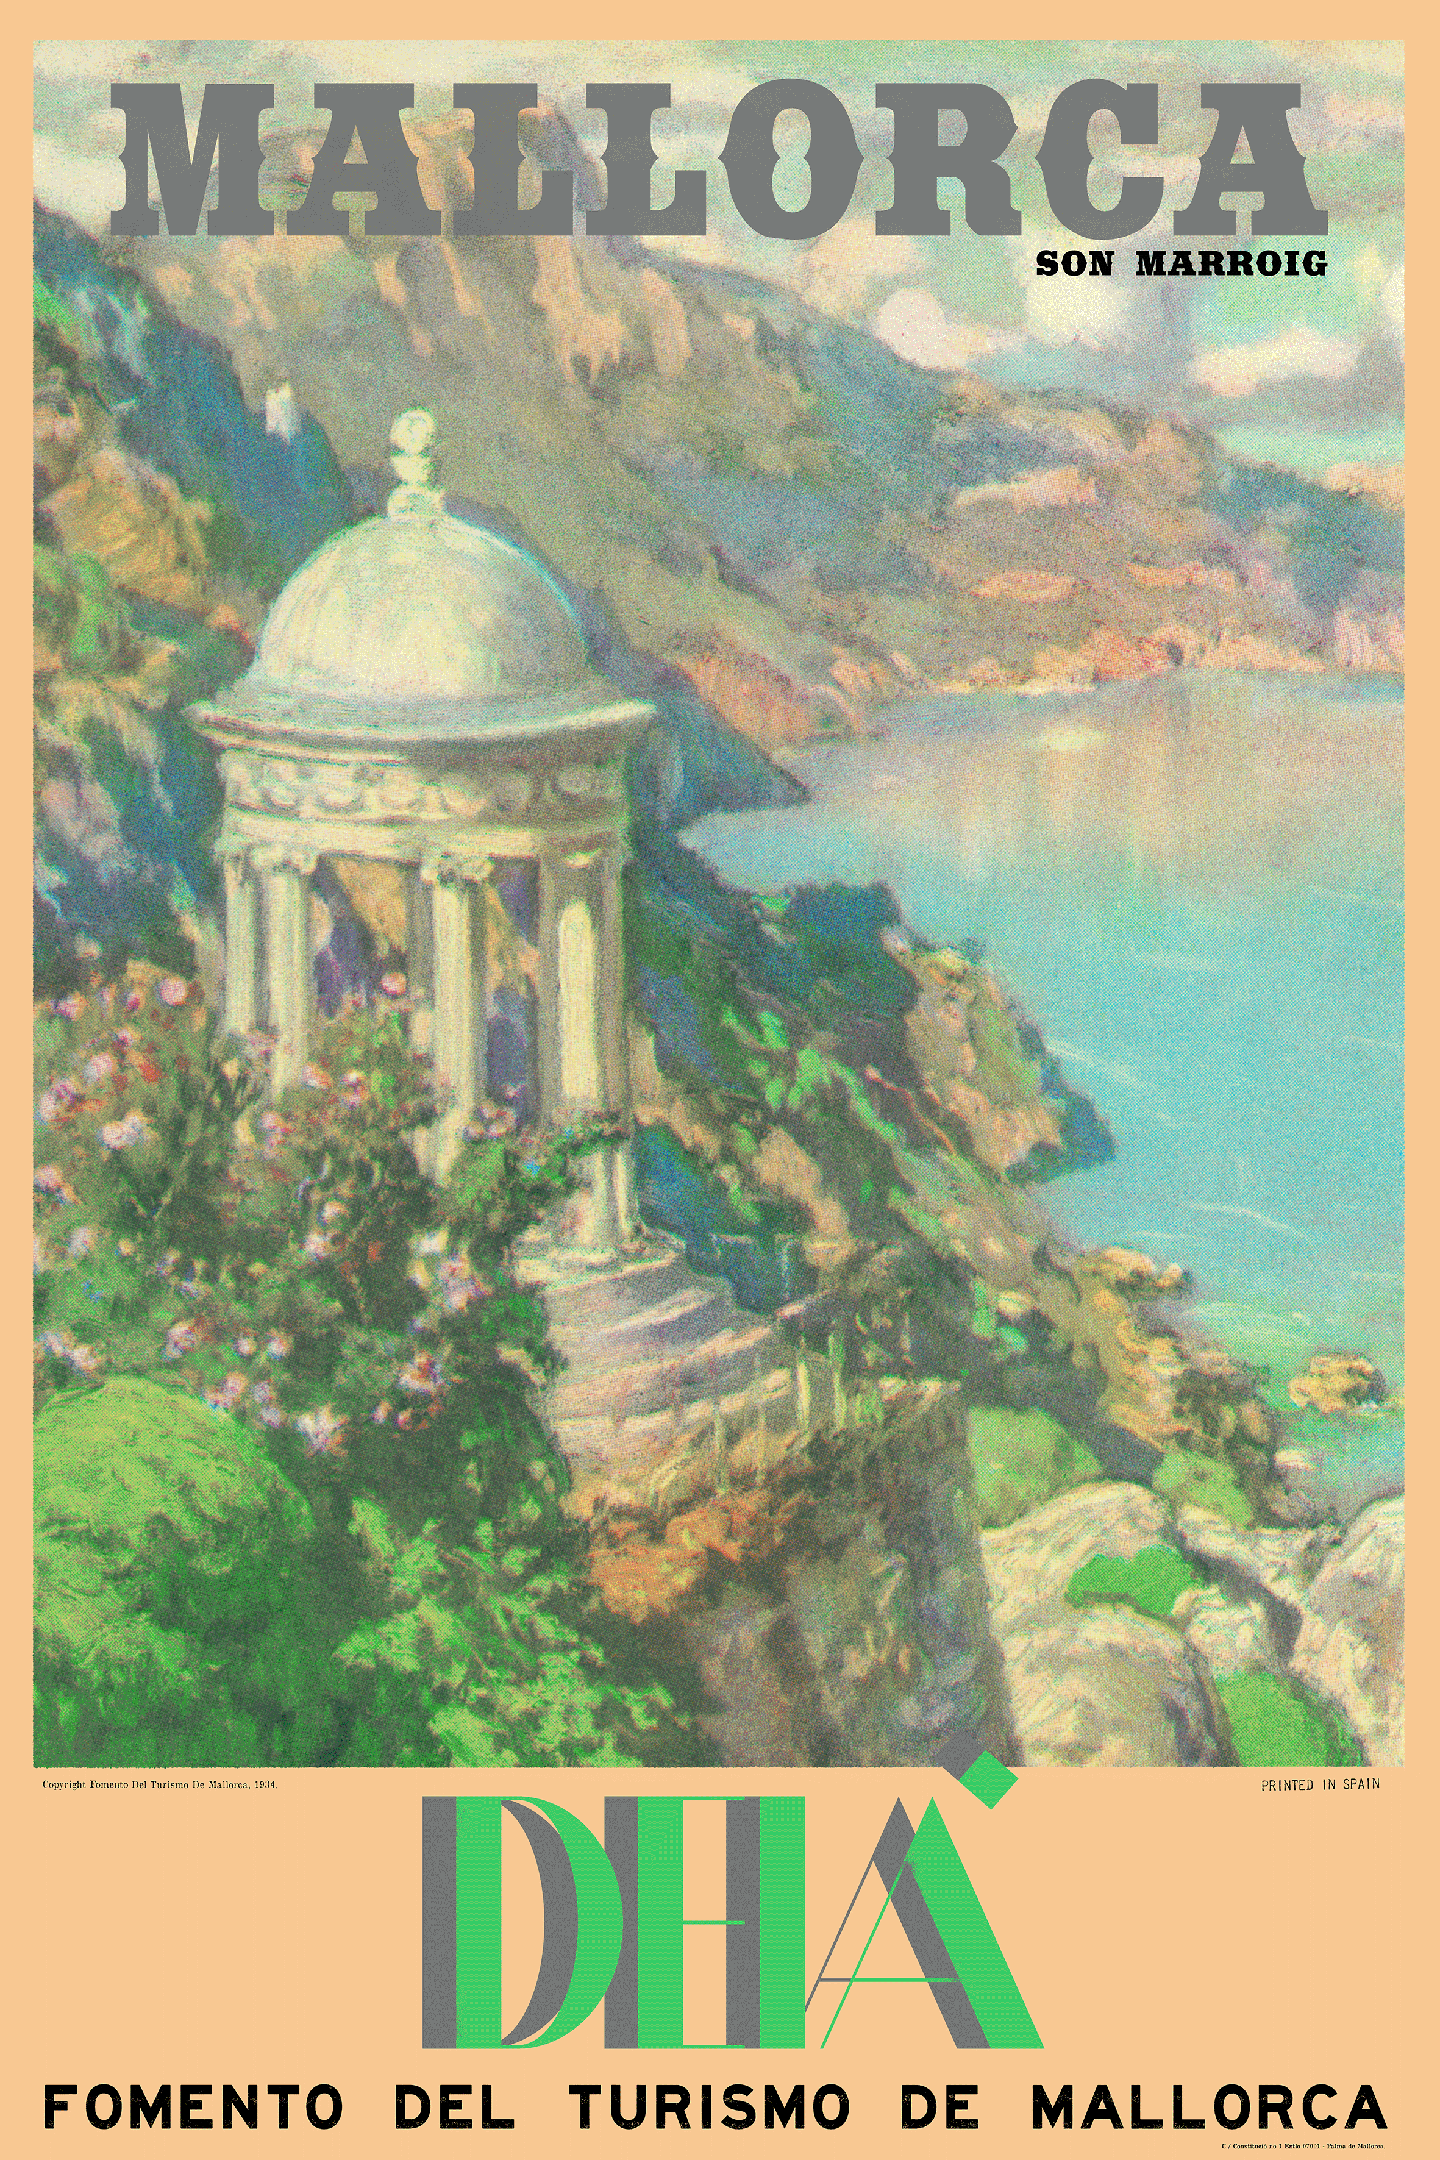 Deià, El Templete de Son Marroig, Mallorca, 1920s (Portait).